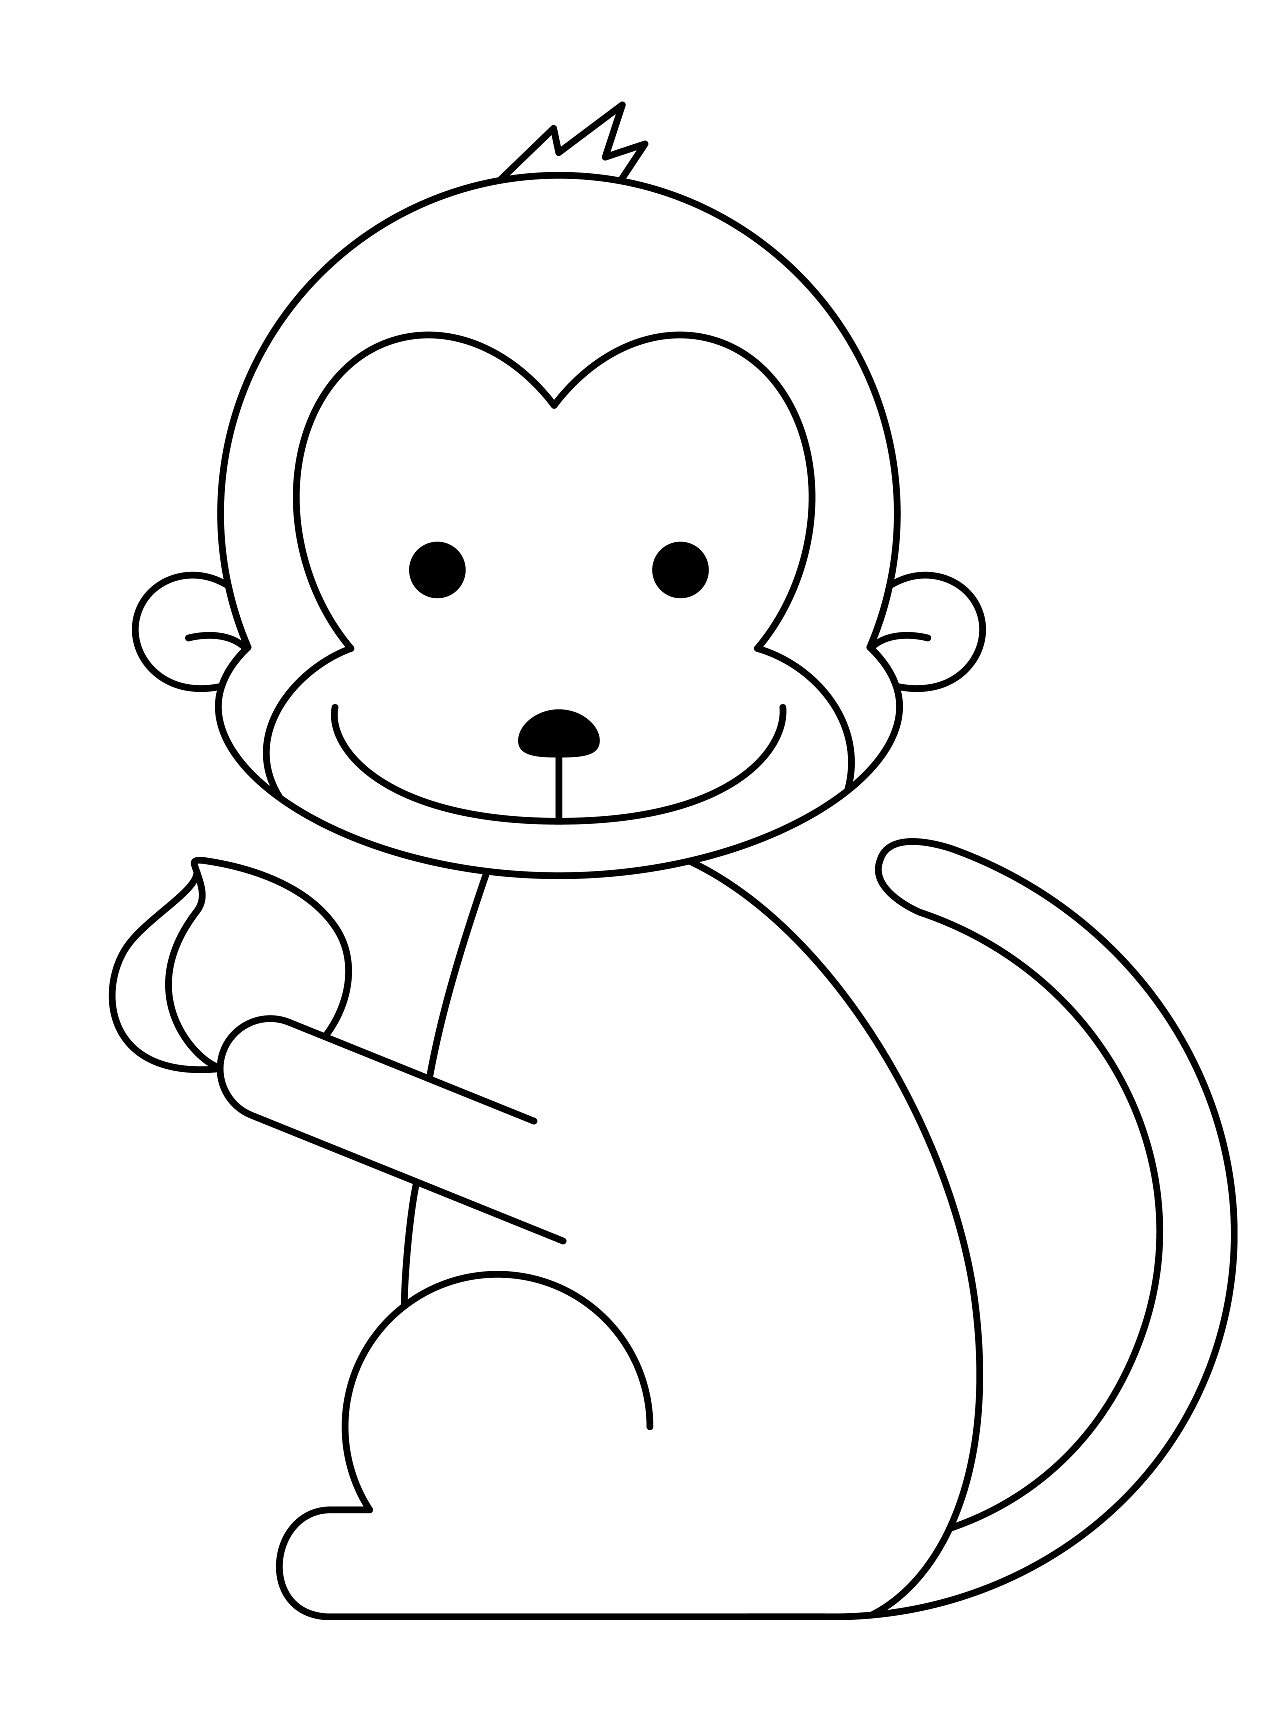 猴子的画法儿童简笔画图片